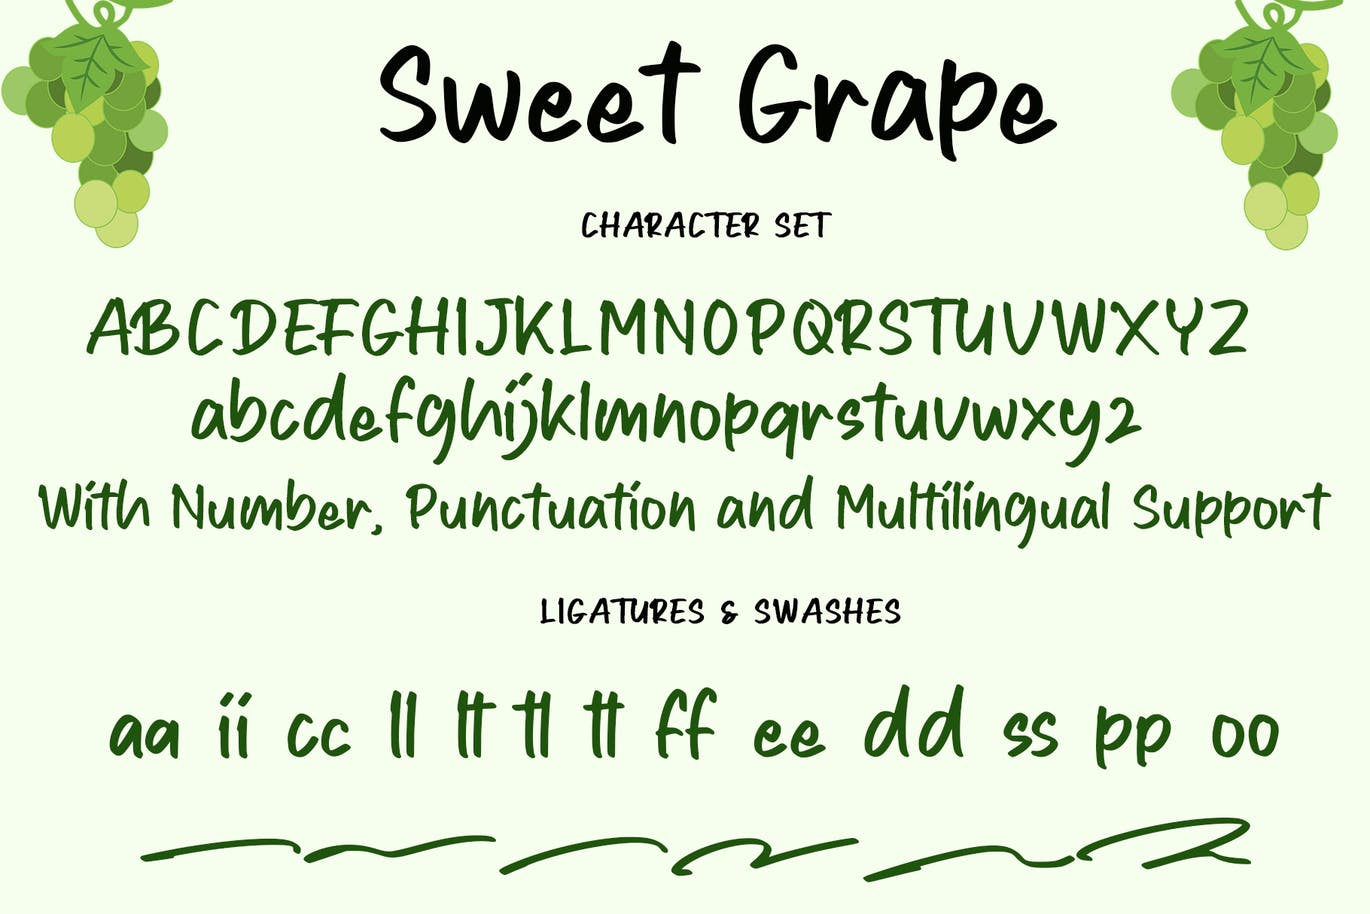 绿色产品包装手写字体素材 Sweet Grape 设计素材 第9张